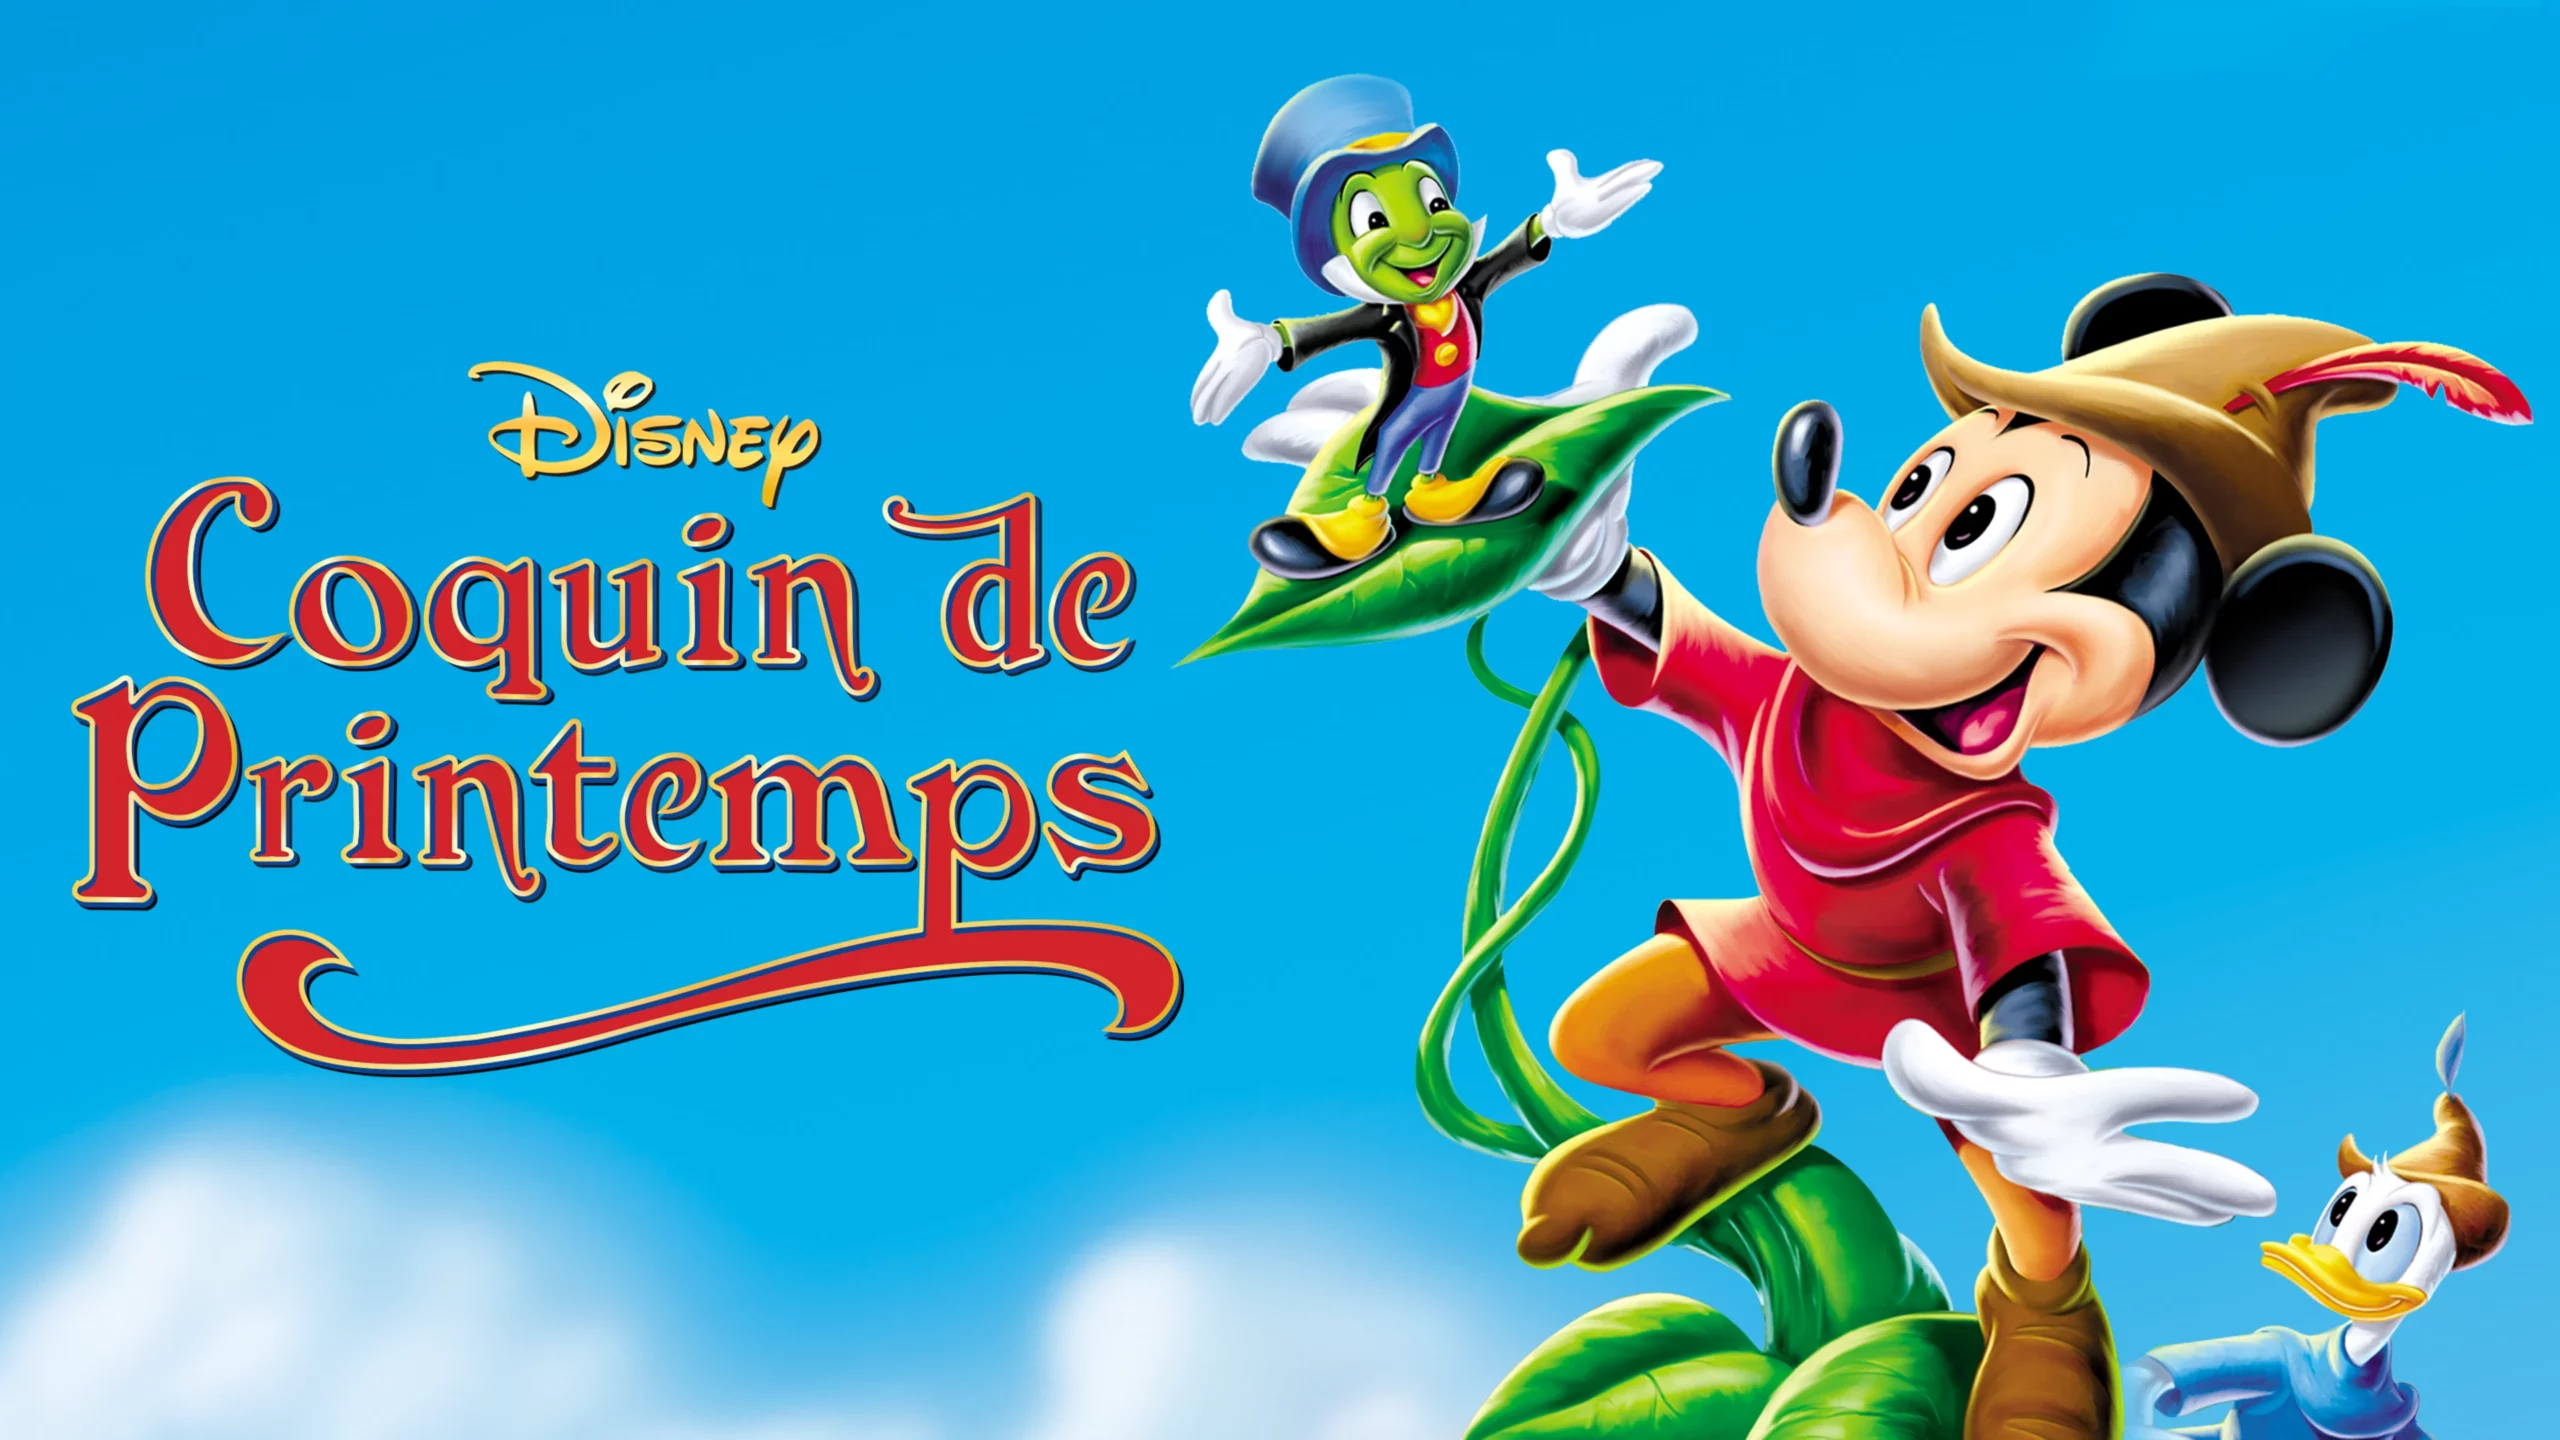 Image promotionnelle du « Coquin de Printemps » de Disney mettant en vedette Mickey Mouse, Jiminy Cricket et Donald Duck dans une scène colorée et animée sur fond de ciel bleu vif.